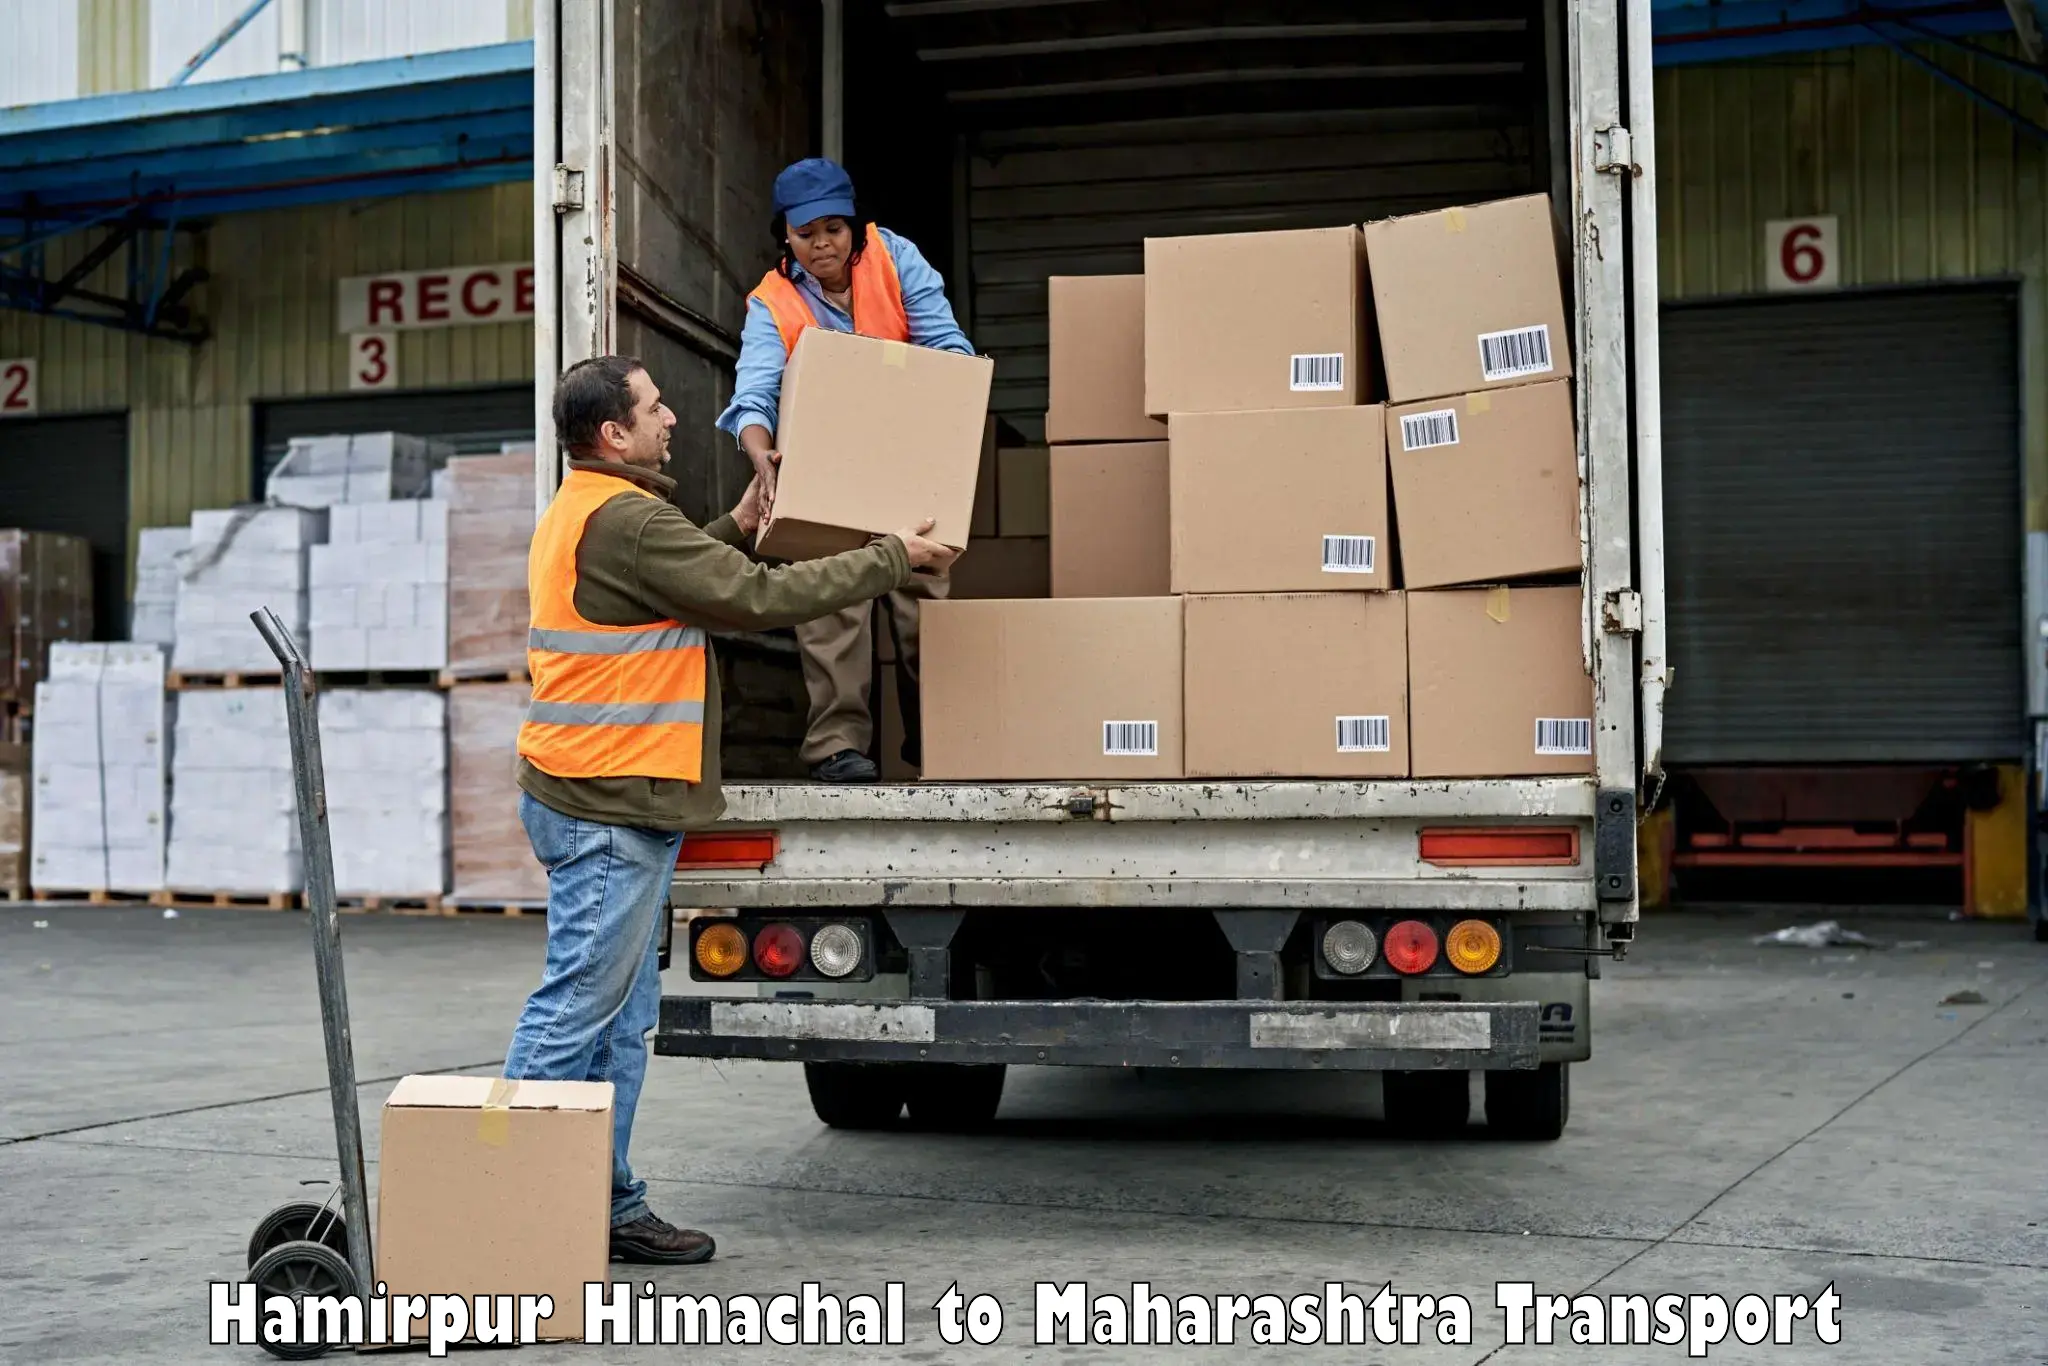 Road transport services Hamirpur Himachal to Walchandnagar